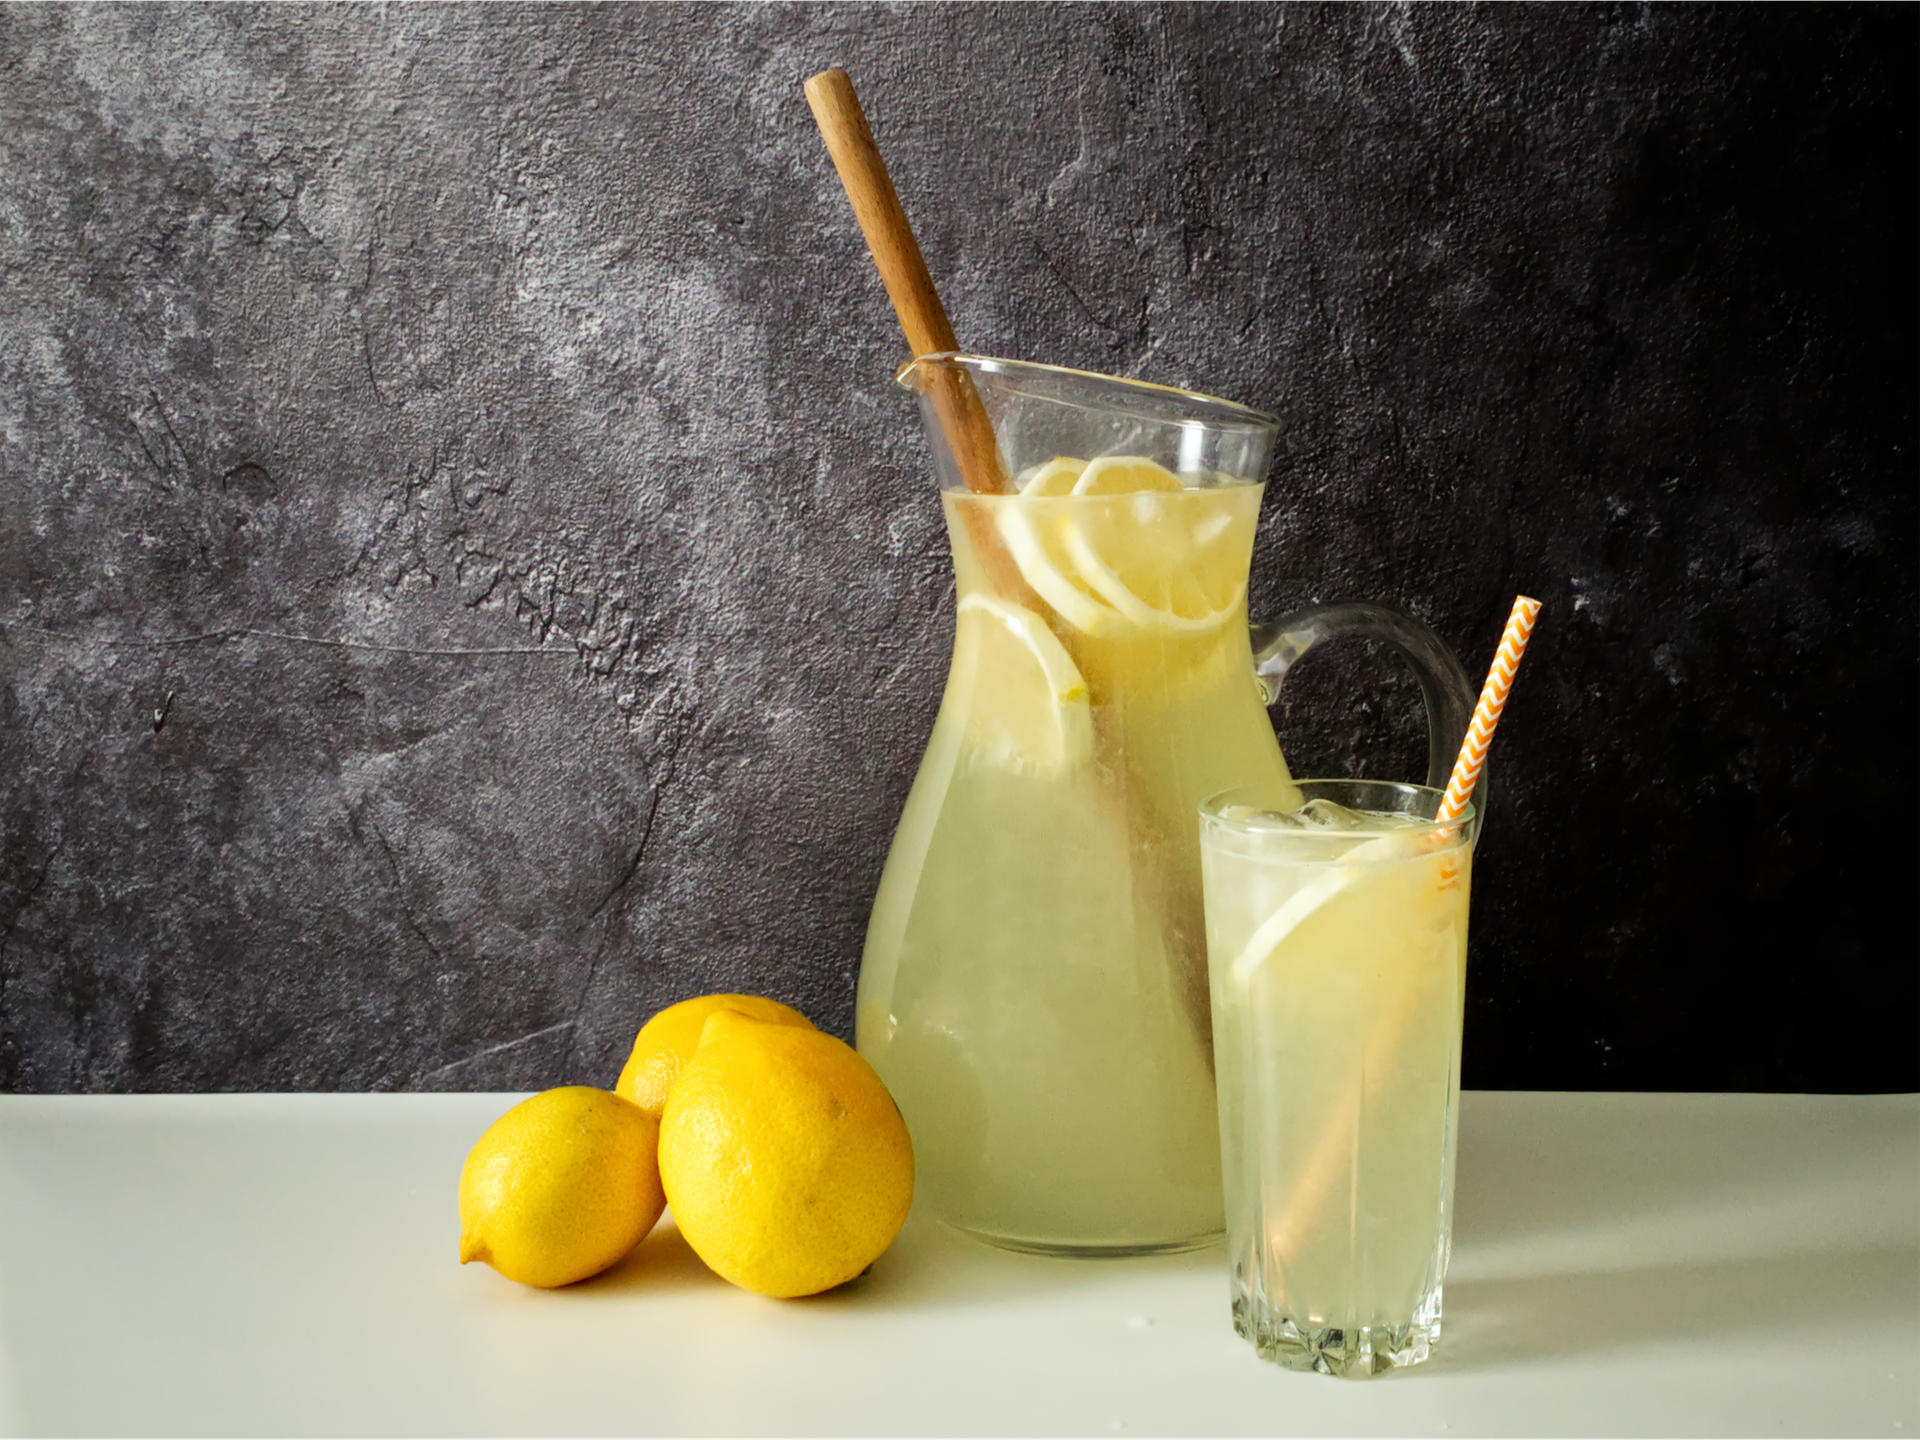 Jug and glass of traditional lemonade